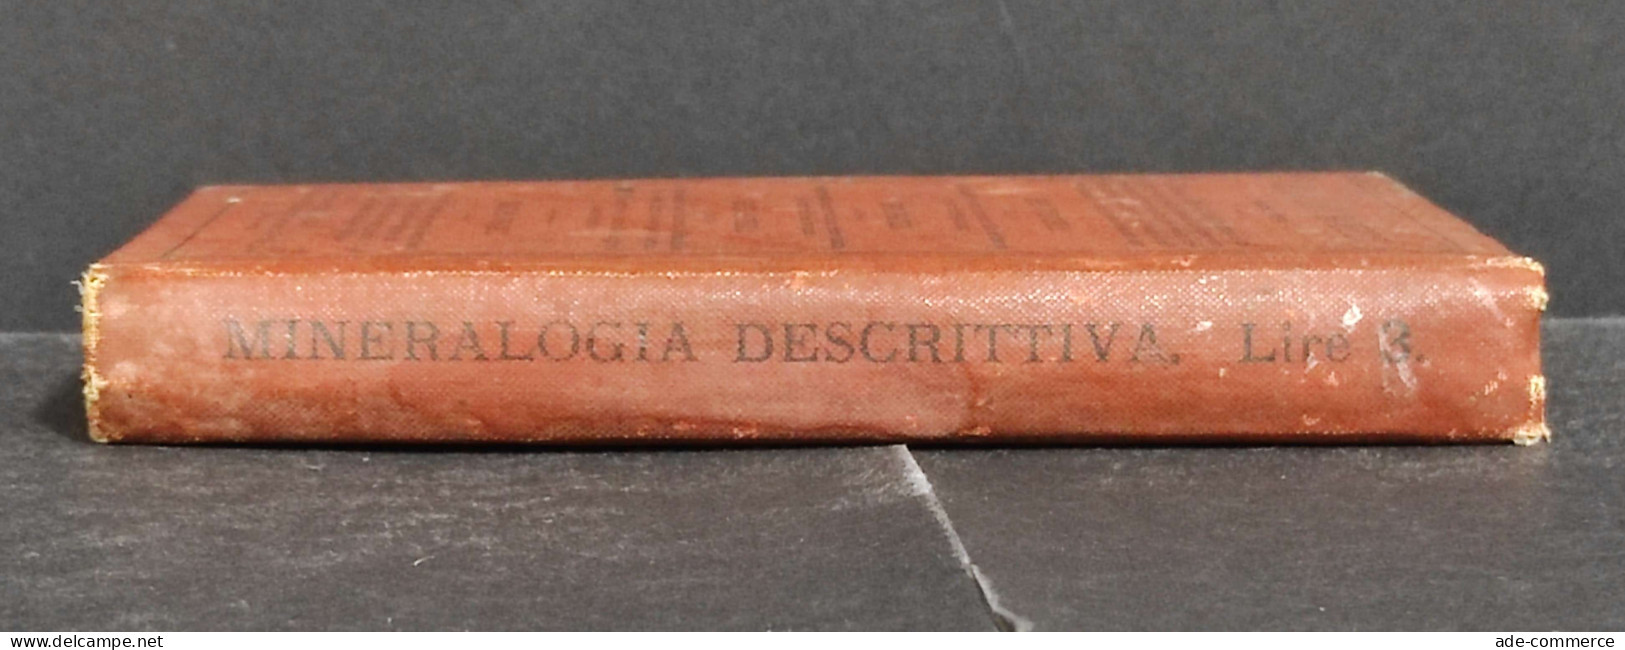 Mineralogia Descrittiva - L. Bombicci - Ed. Hoepli - 1885 - Libri Antichi